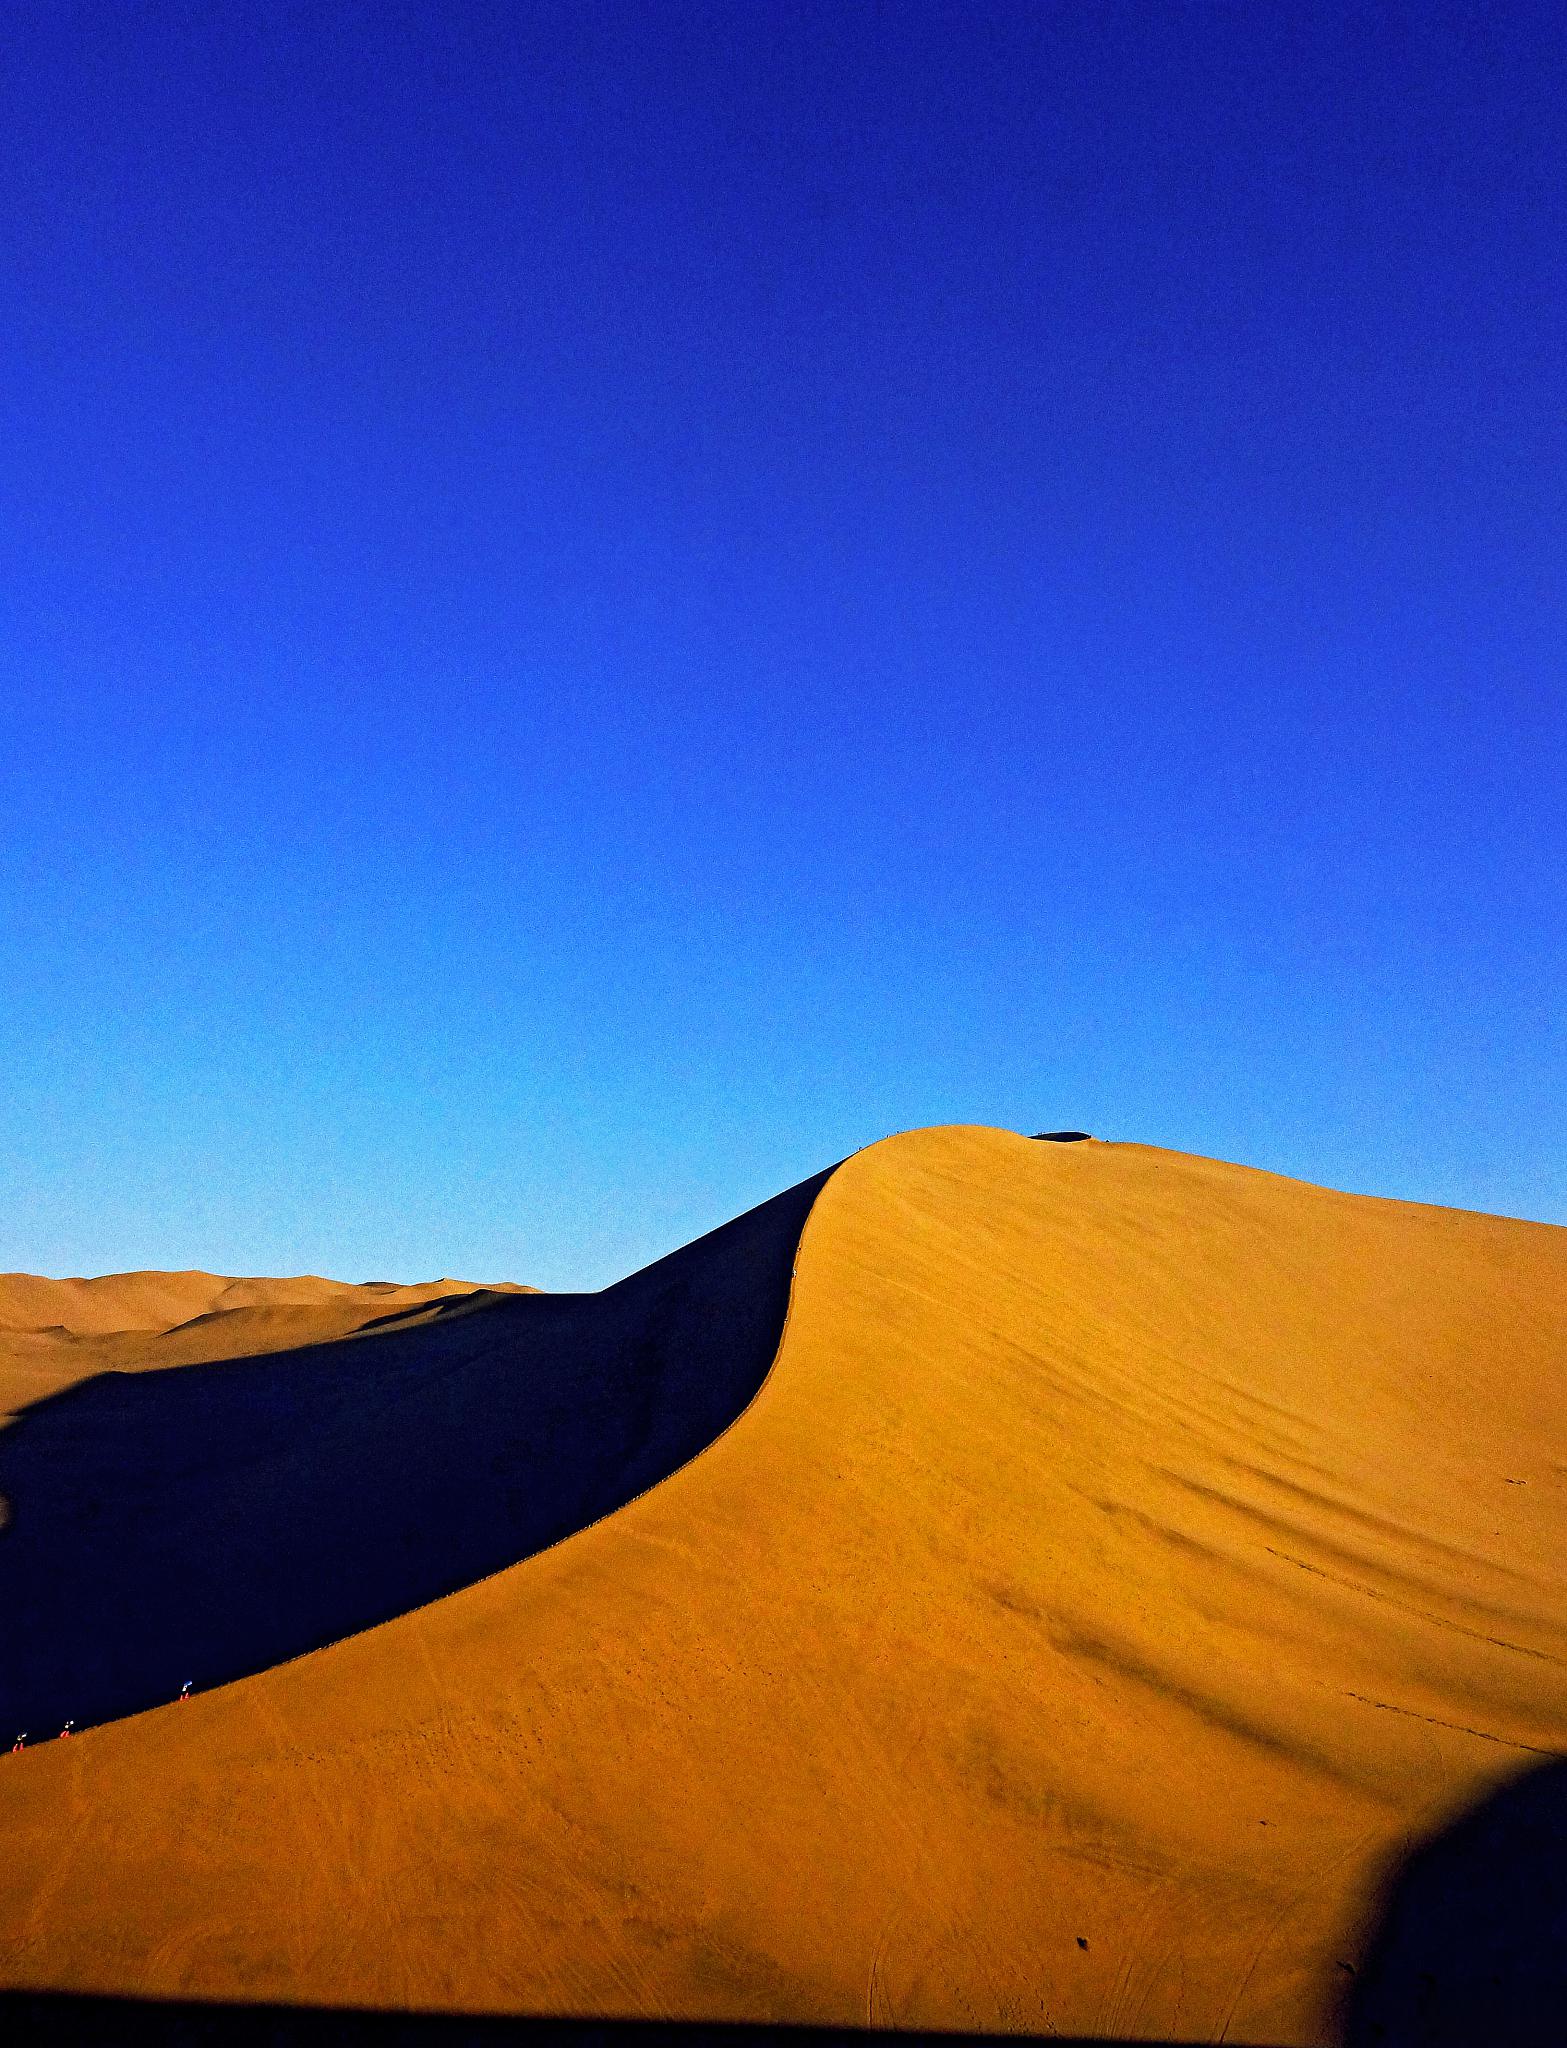 鸣沙山,沙漠中的奇观 鸣沙山,位于中国甘肃省敦煌市,是一处独特的沙漠